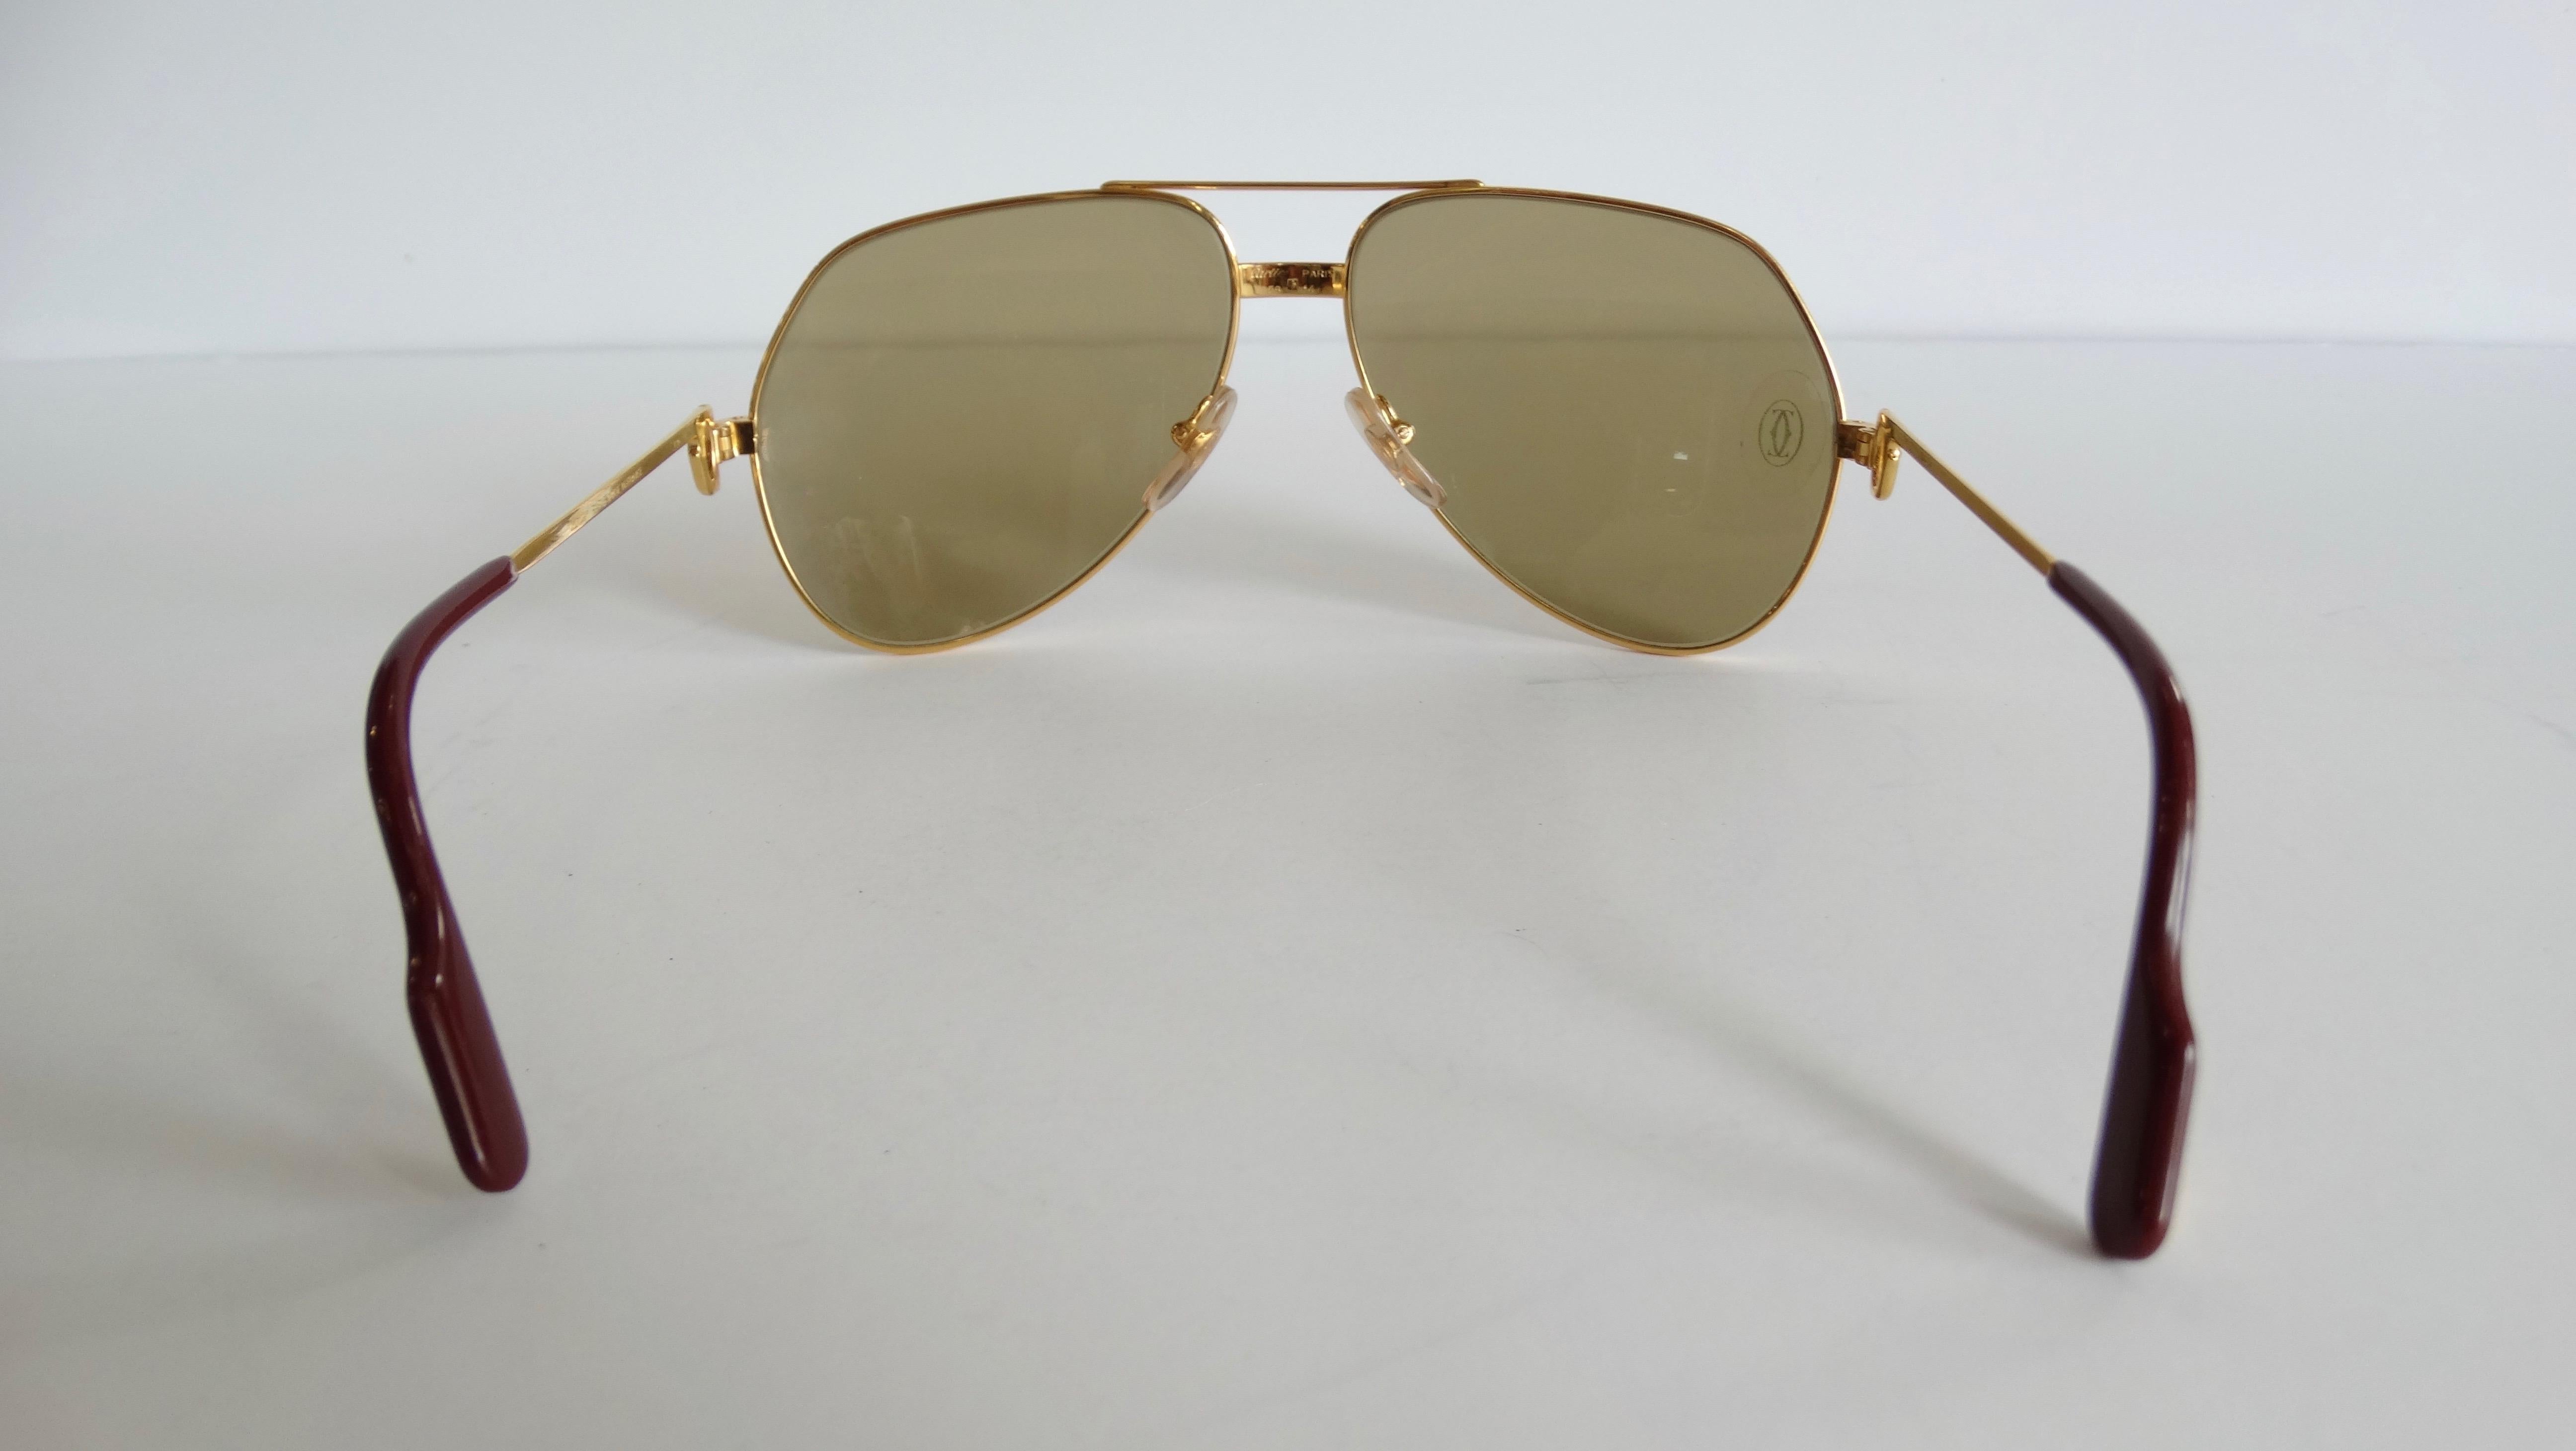 Holen Sie sich das ultimative Paar Vintage-Sonnenbrillen! Diese Cartier-Sonnenbrille im Pilotenstil aus den Jahren 1983-1997 ist auch unter dem Namen Vendome Louis bekannt. Sie ist versilbert und vergoldet und verfügt über braun getönte Gläser mit